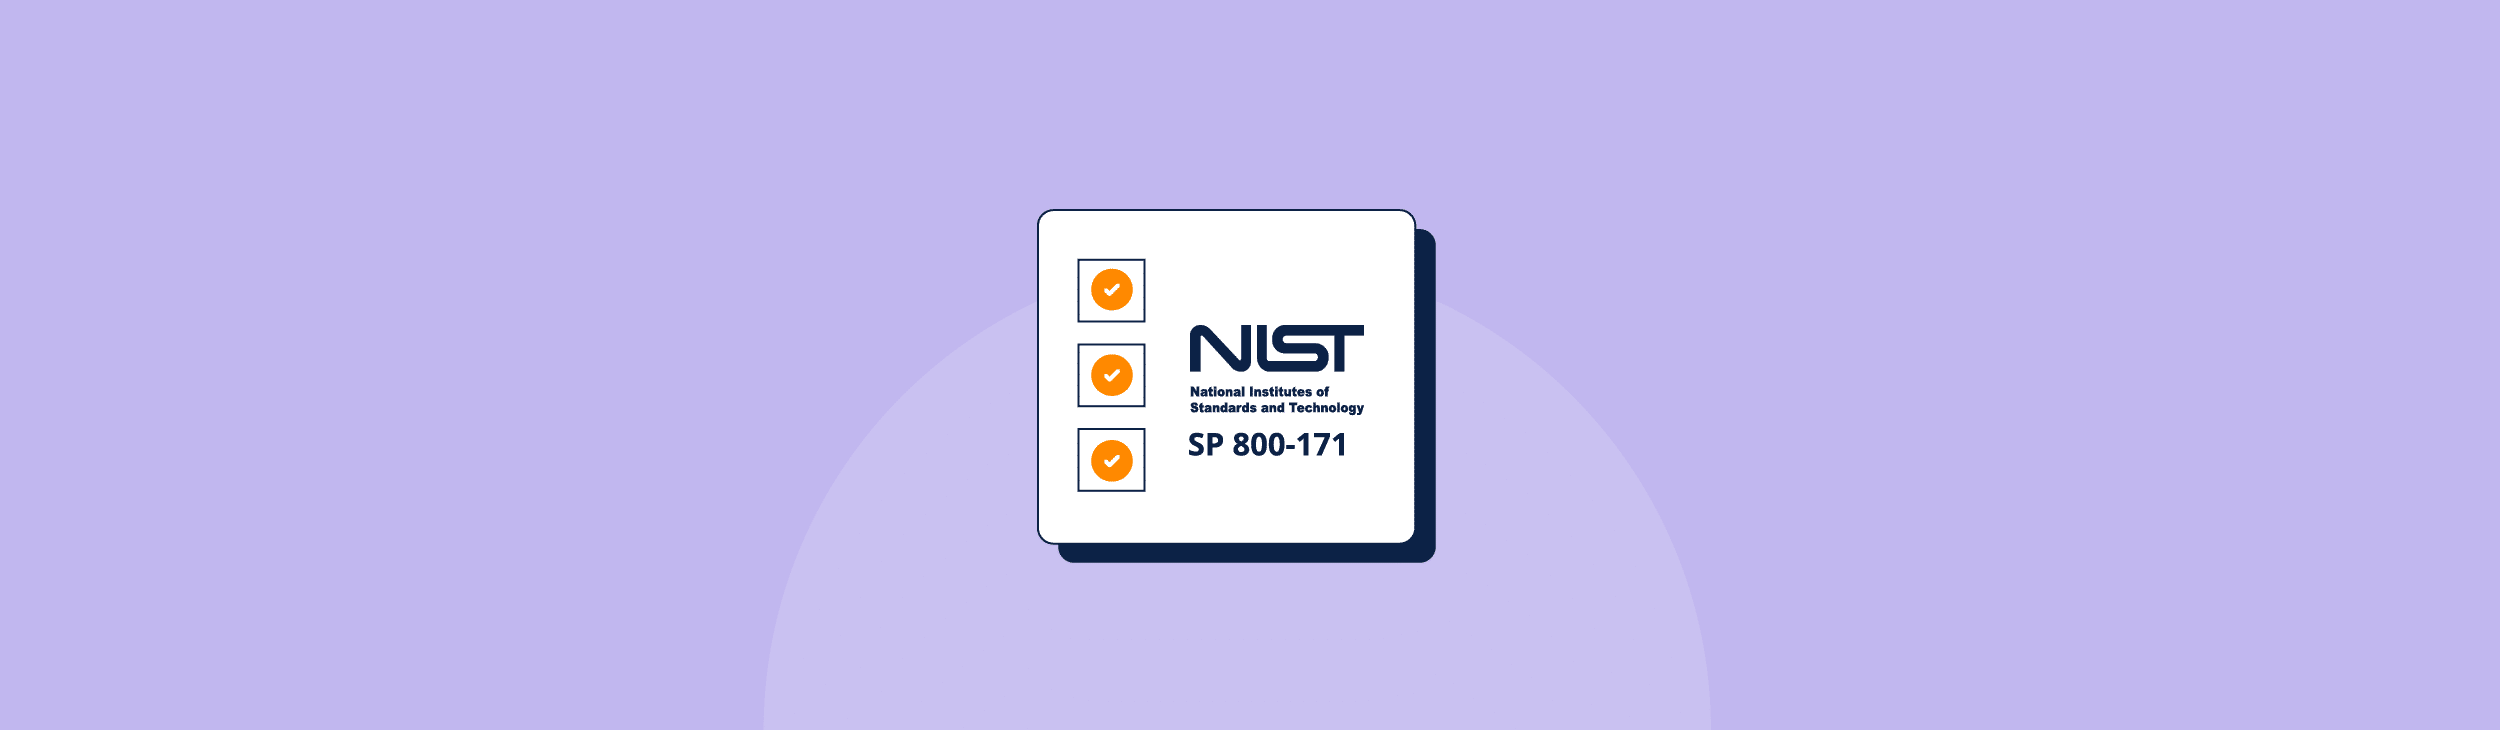 NIST SP 800-171 Framework Guidelines